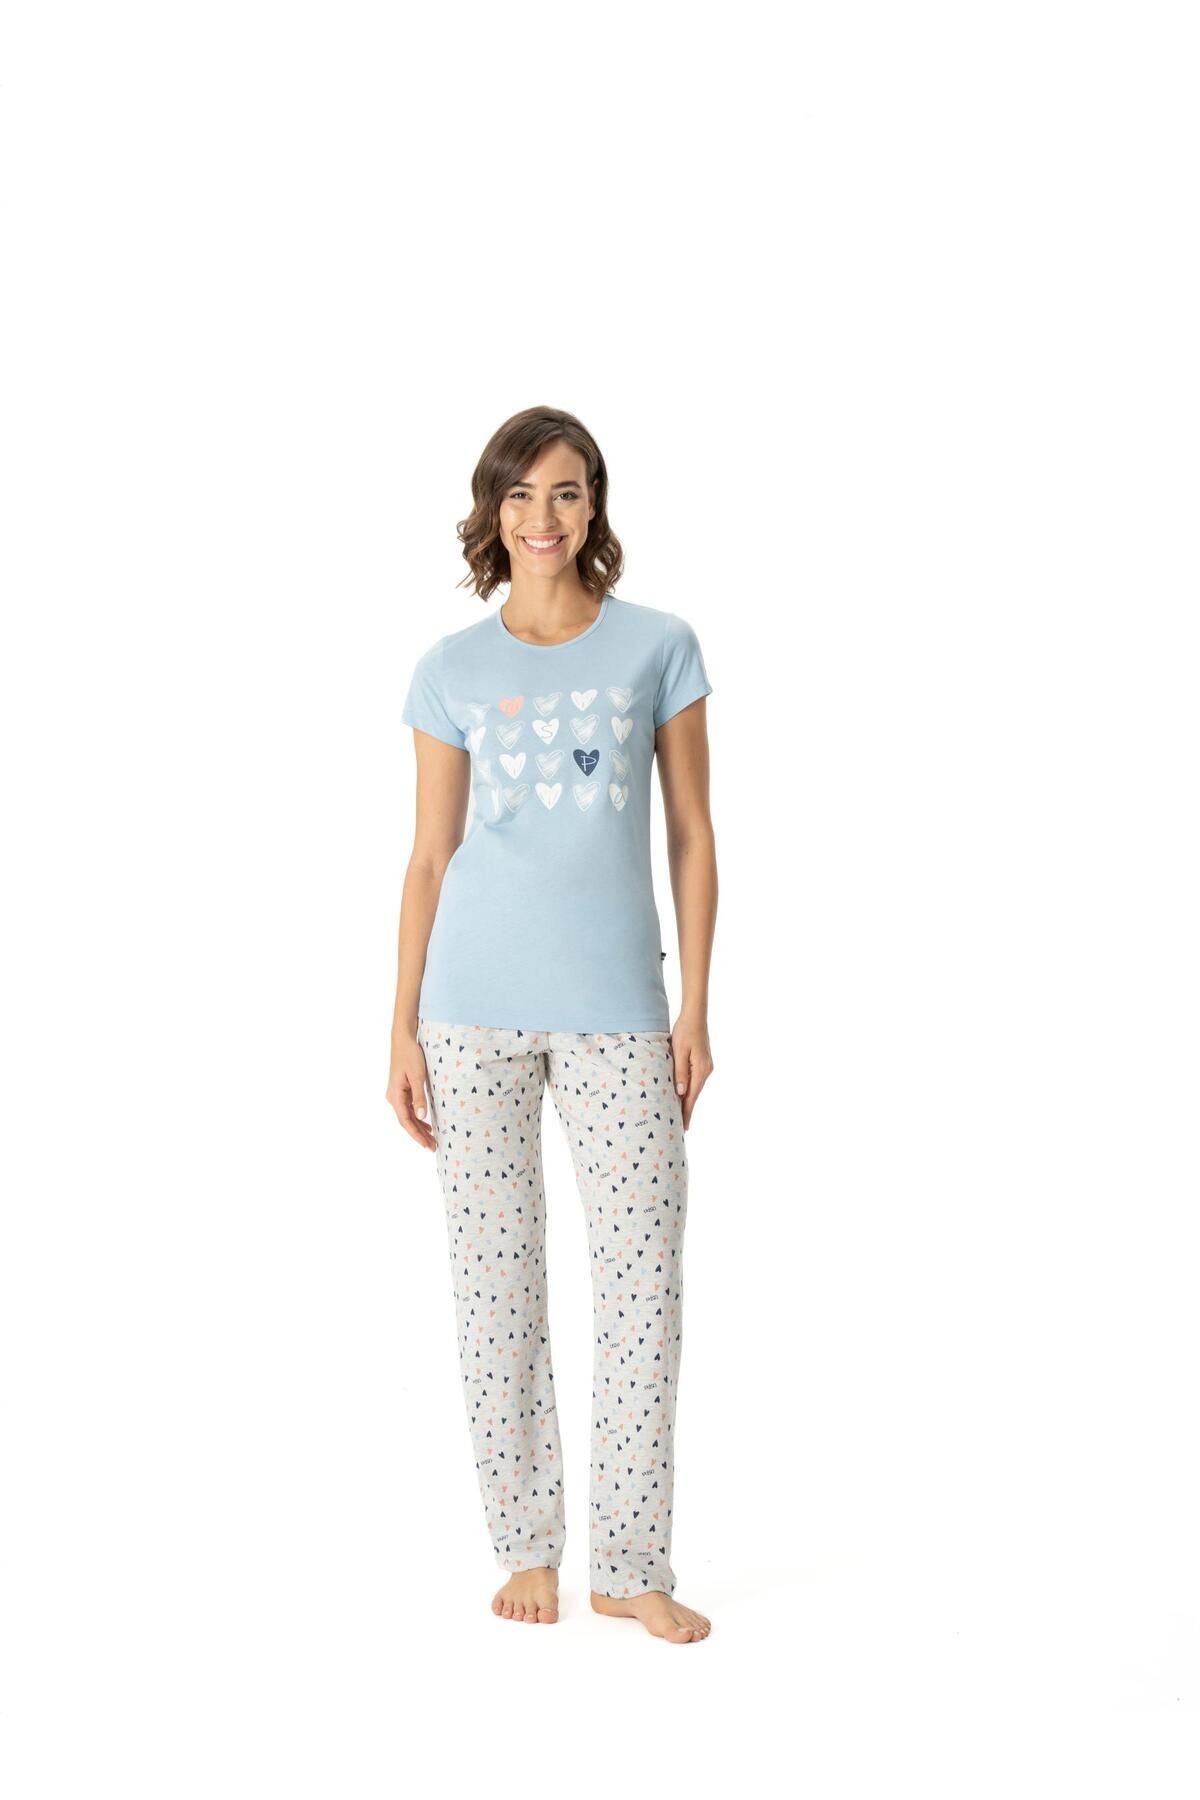 U.S. Polo Assn. Kadın Mavi Yuvarlak Yaka Cepli Pijama Takımı 17008